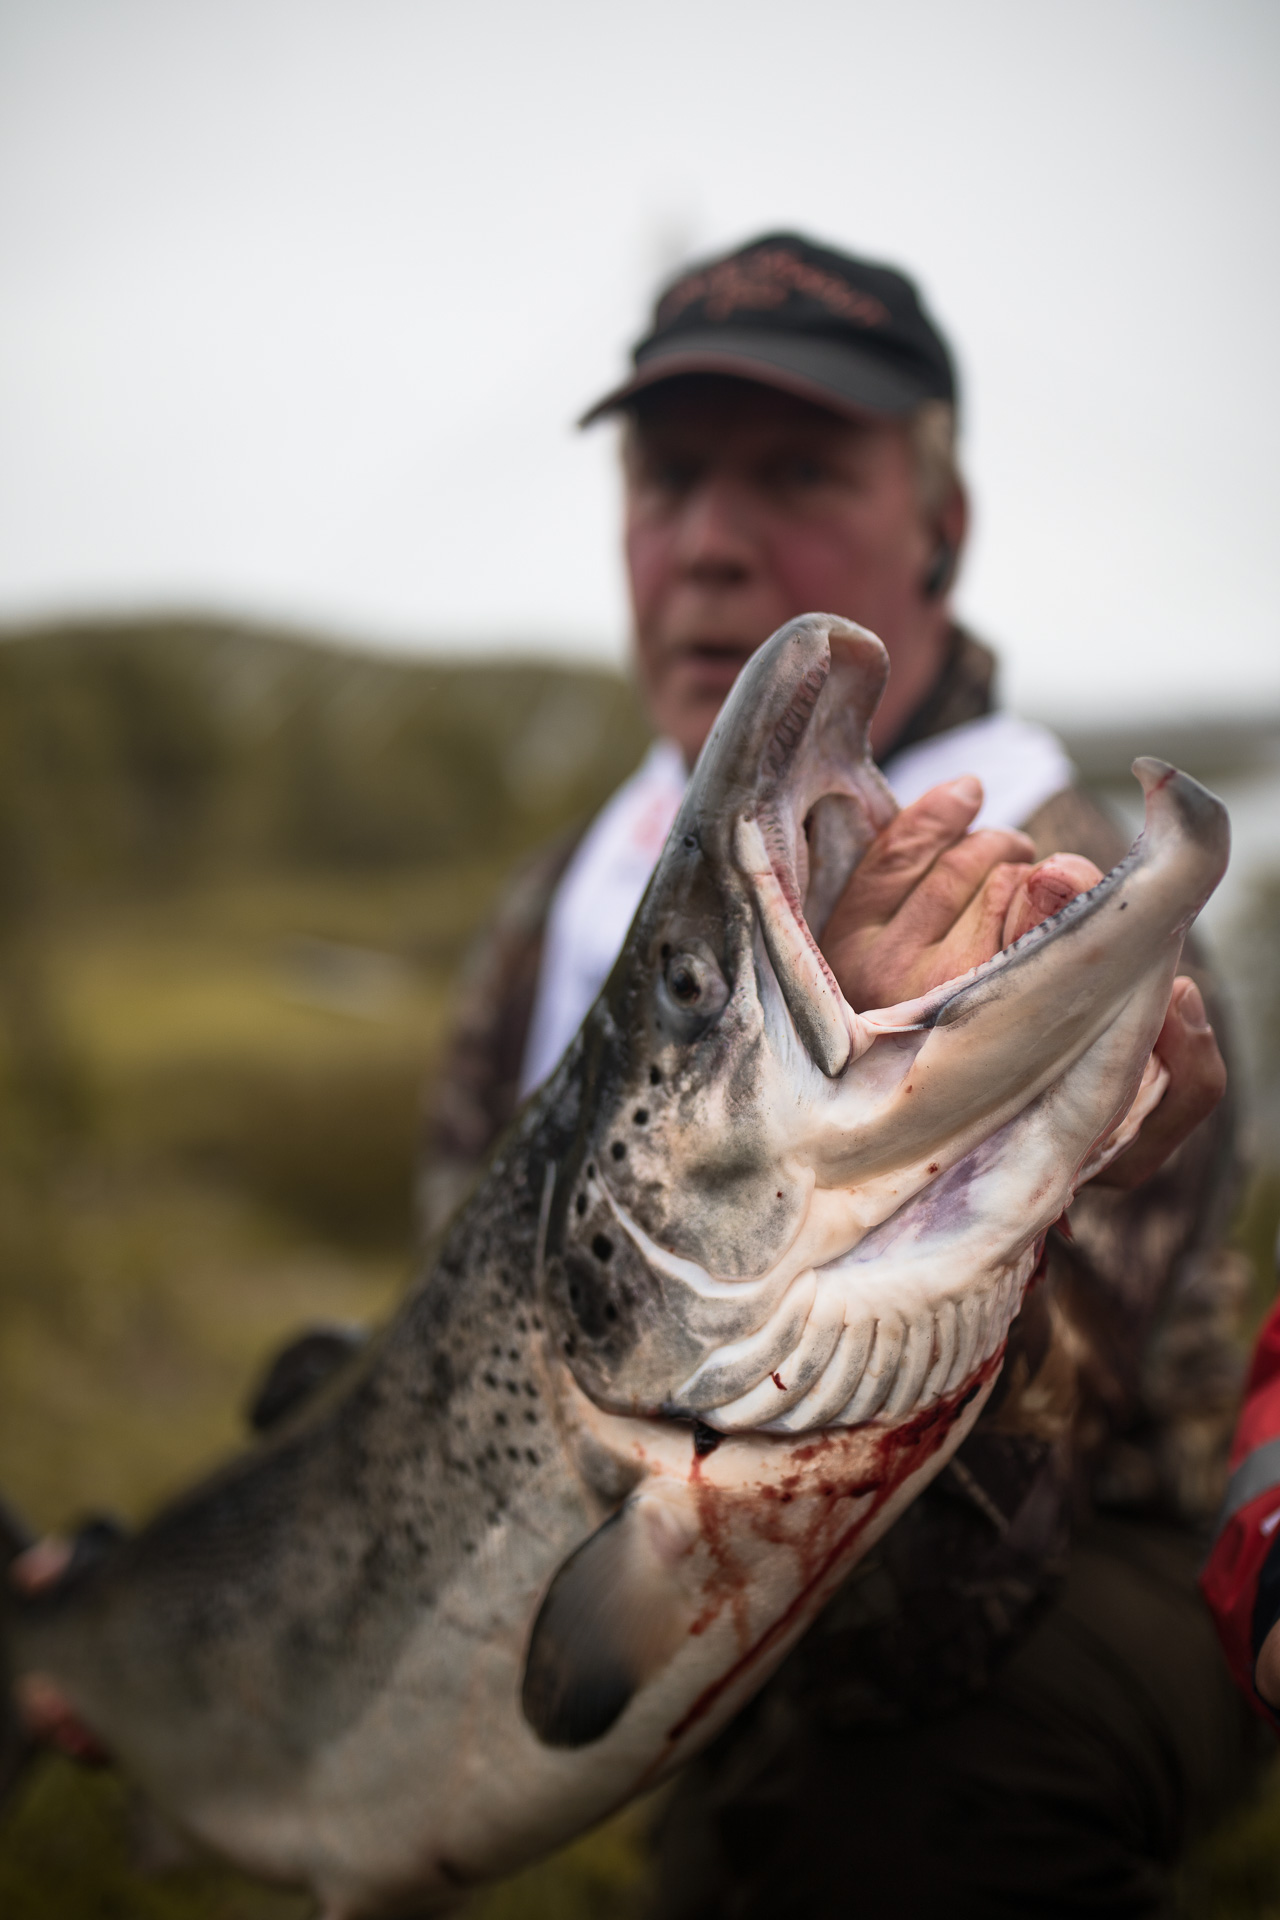 Catch a fish in Scandinavia - Gone71° N